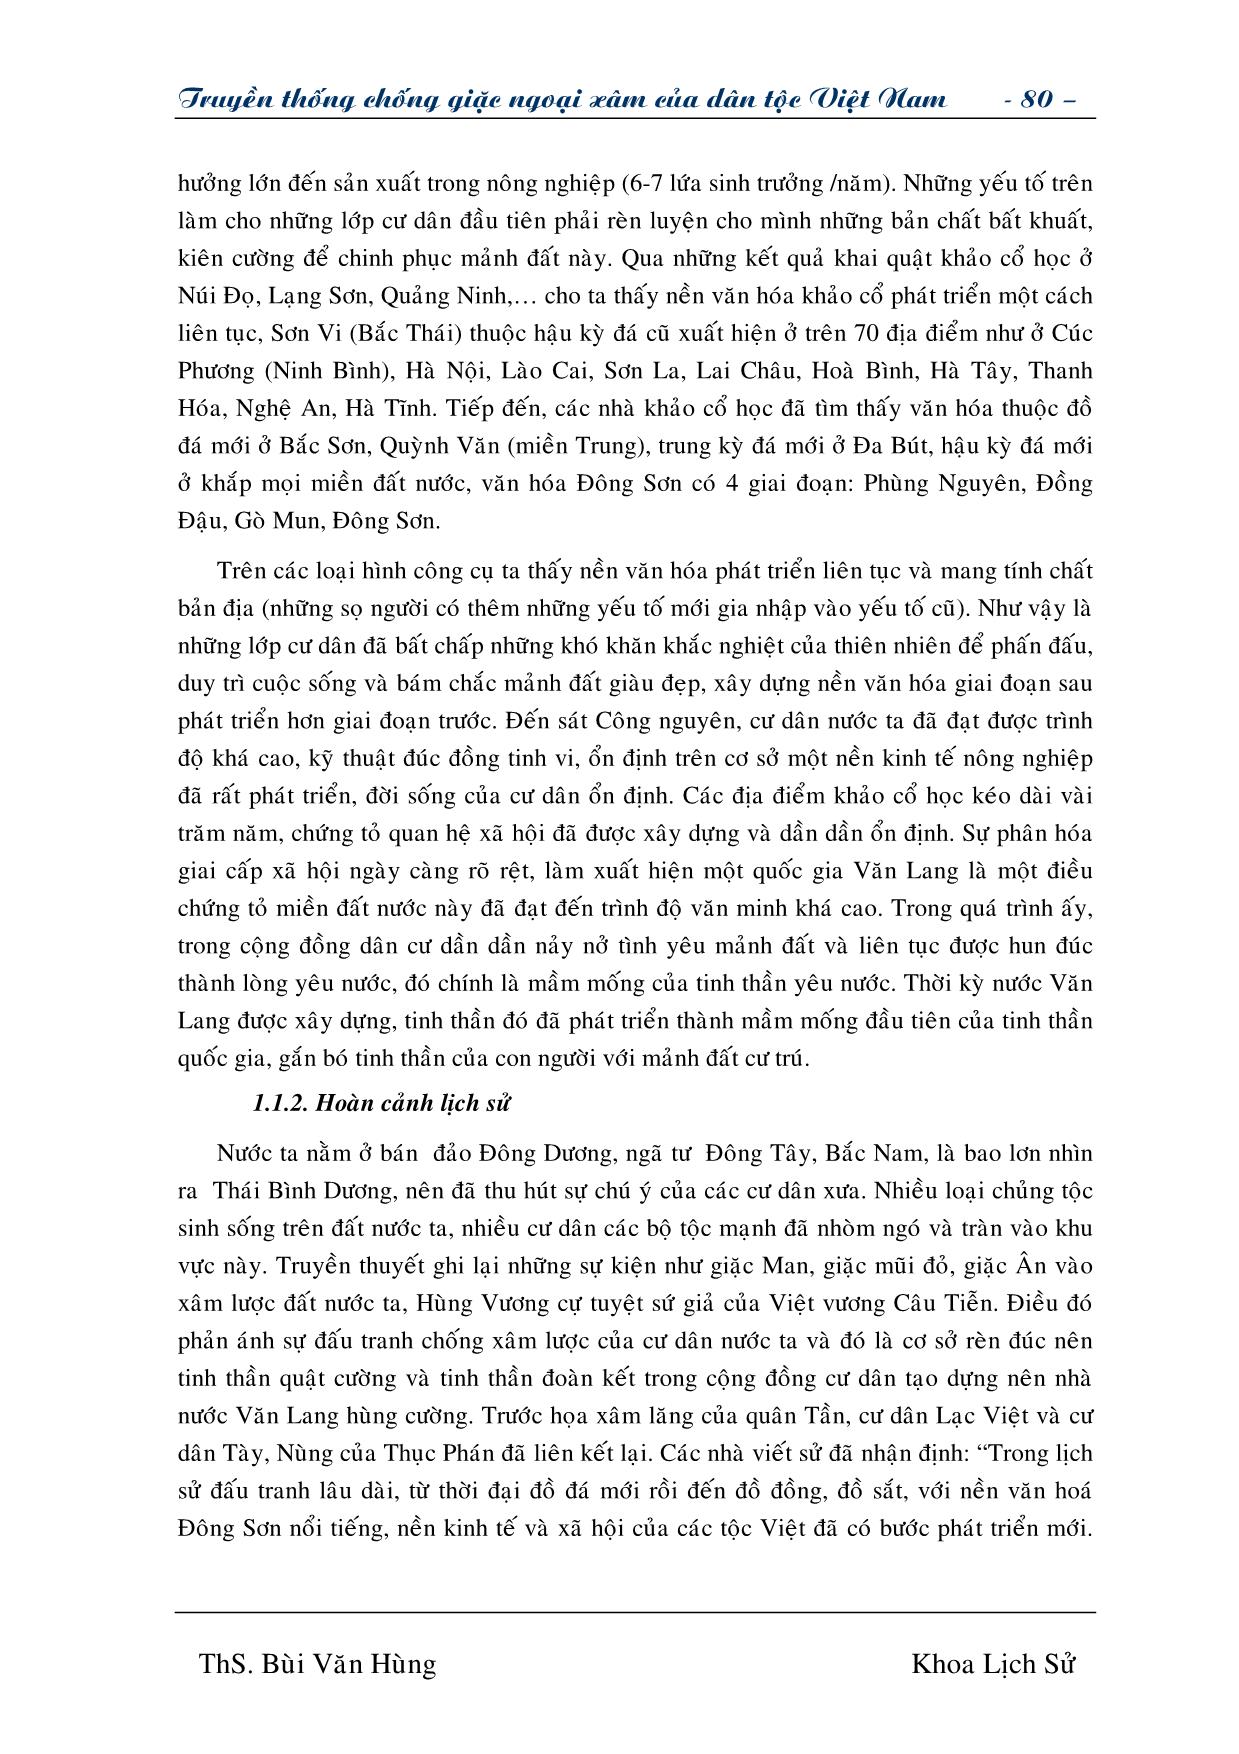 Giáo trình Truyền thống chống giặc ngoại xâm của dân tộc Việt Nam (Phần 2) trang 2